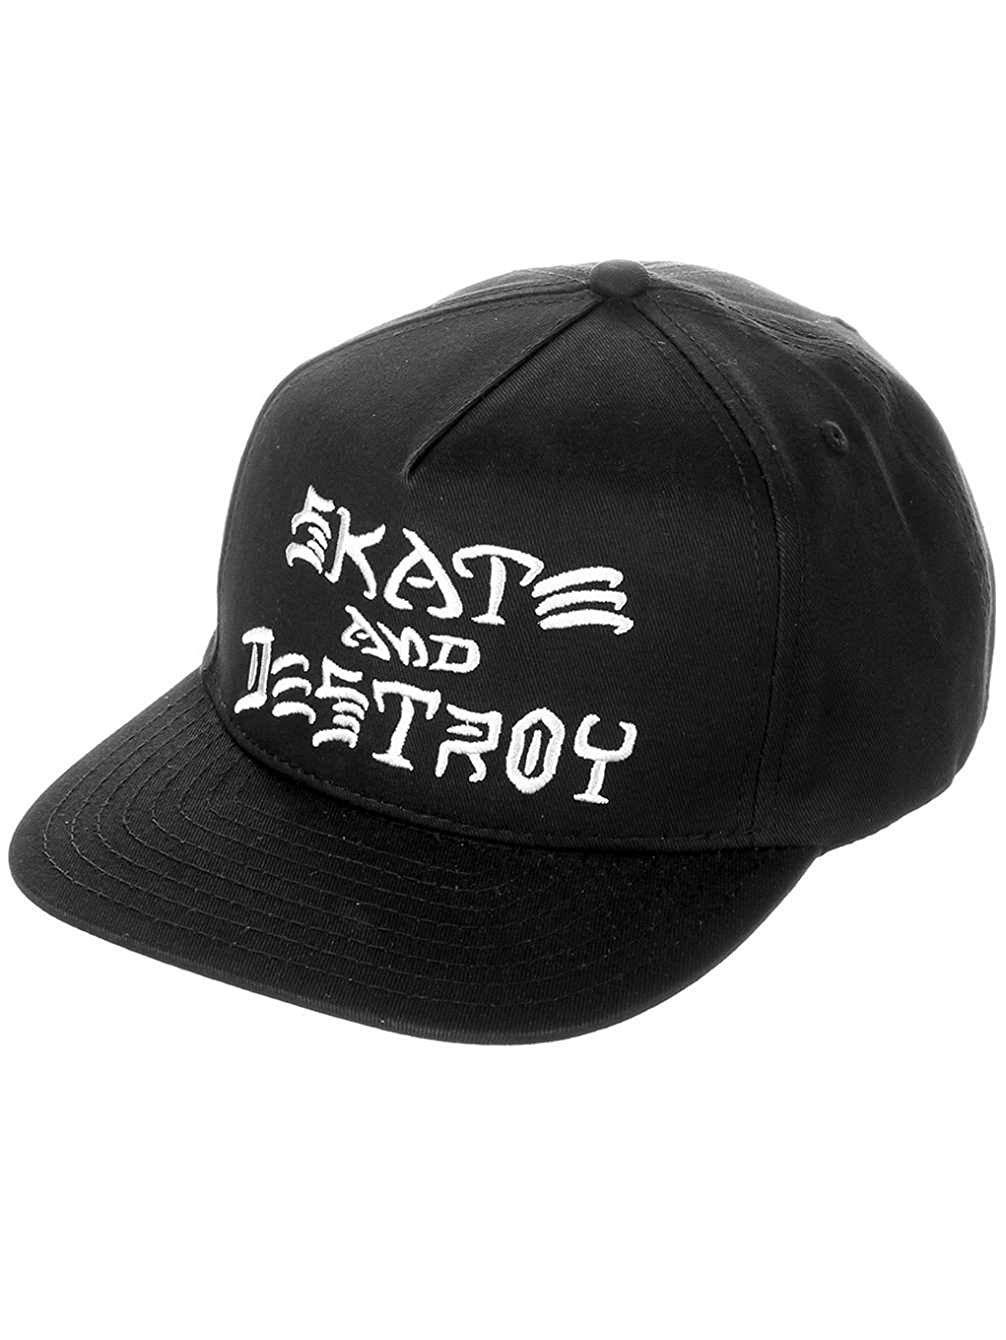 Thrasher Skate and Destroy Logo - Thrasher Skate and Destroy Adjustable Skateboard Hat Cap (Black, One ...